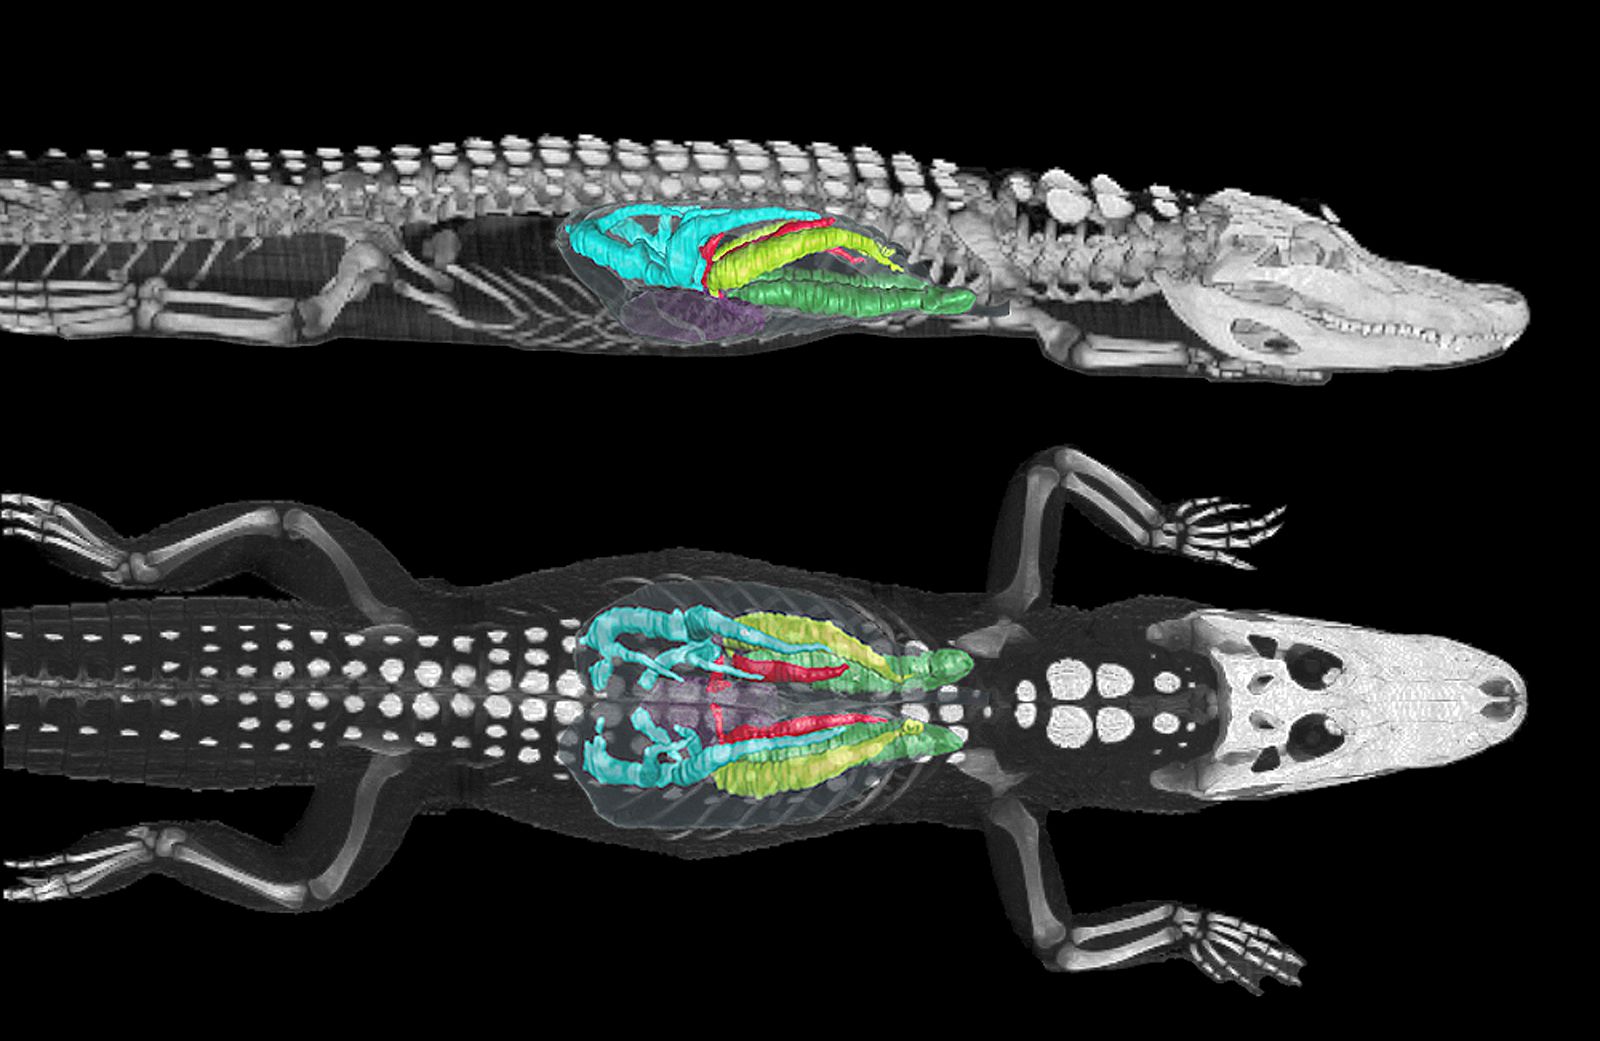 Imagen tomada mediante tomografía computerizada de los pulmones de un caimán americano de 11 kilogramos sumergido.